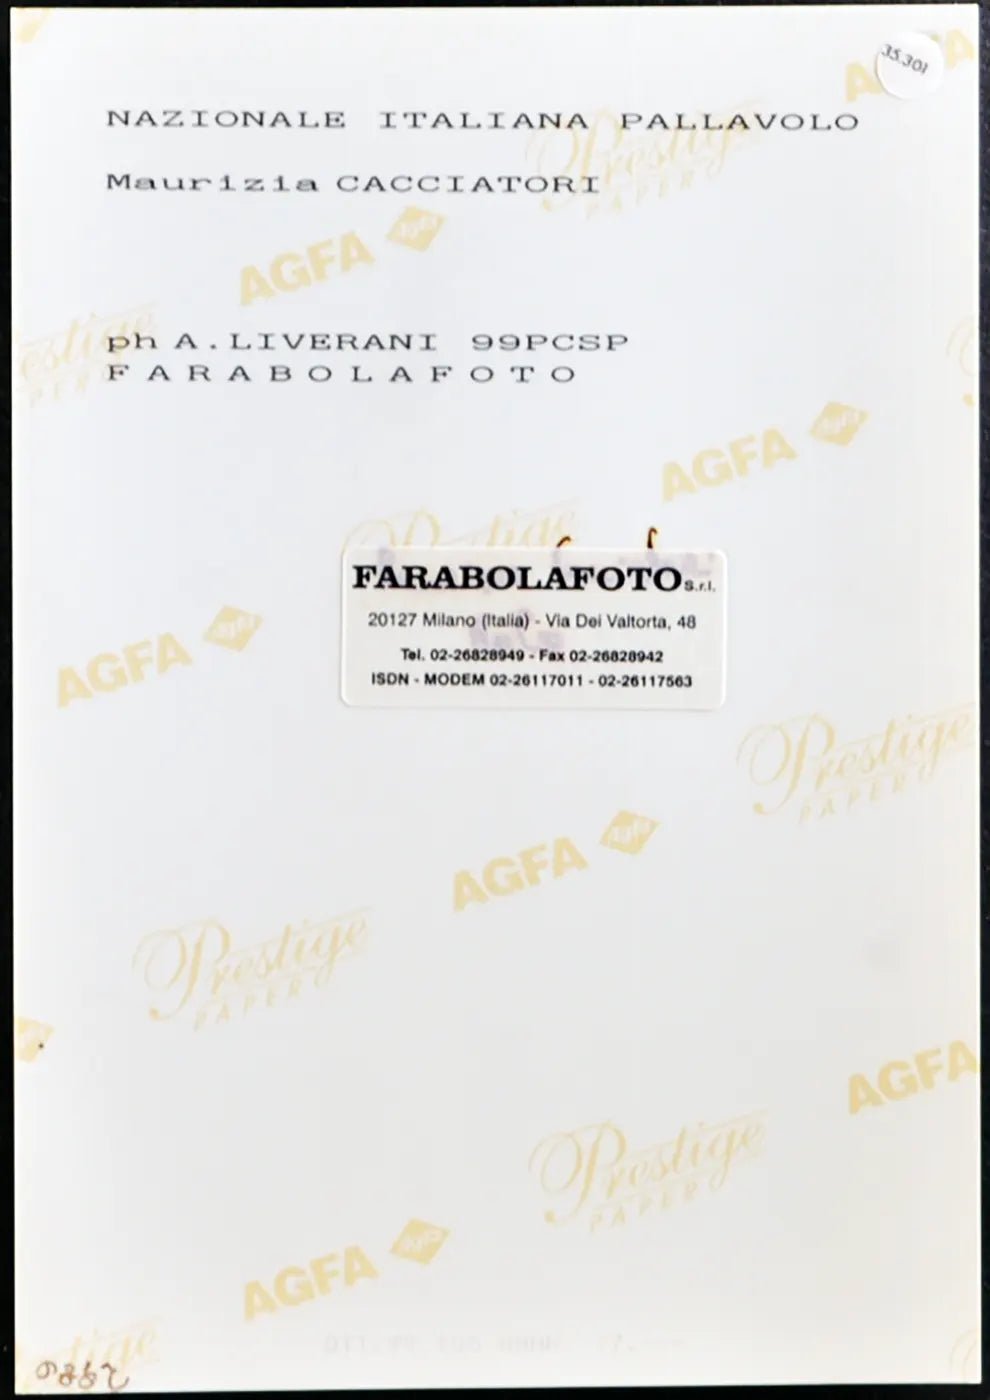 Cacciatori Nazionale Pallavolo 1999 Ft 35301 - Stampa 20x15 cm - Farabola Stampa ai sali d'argento